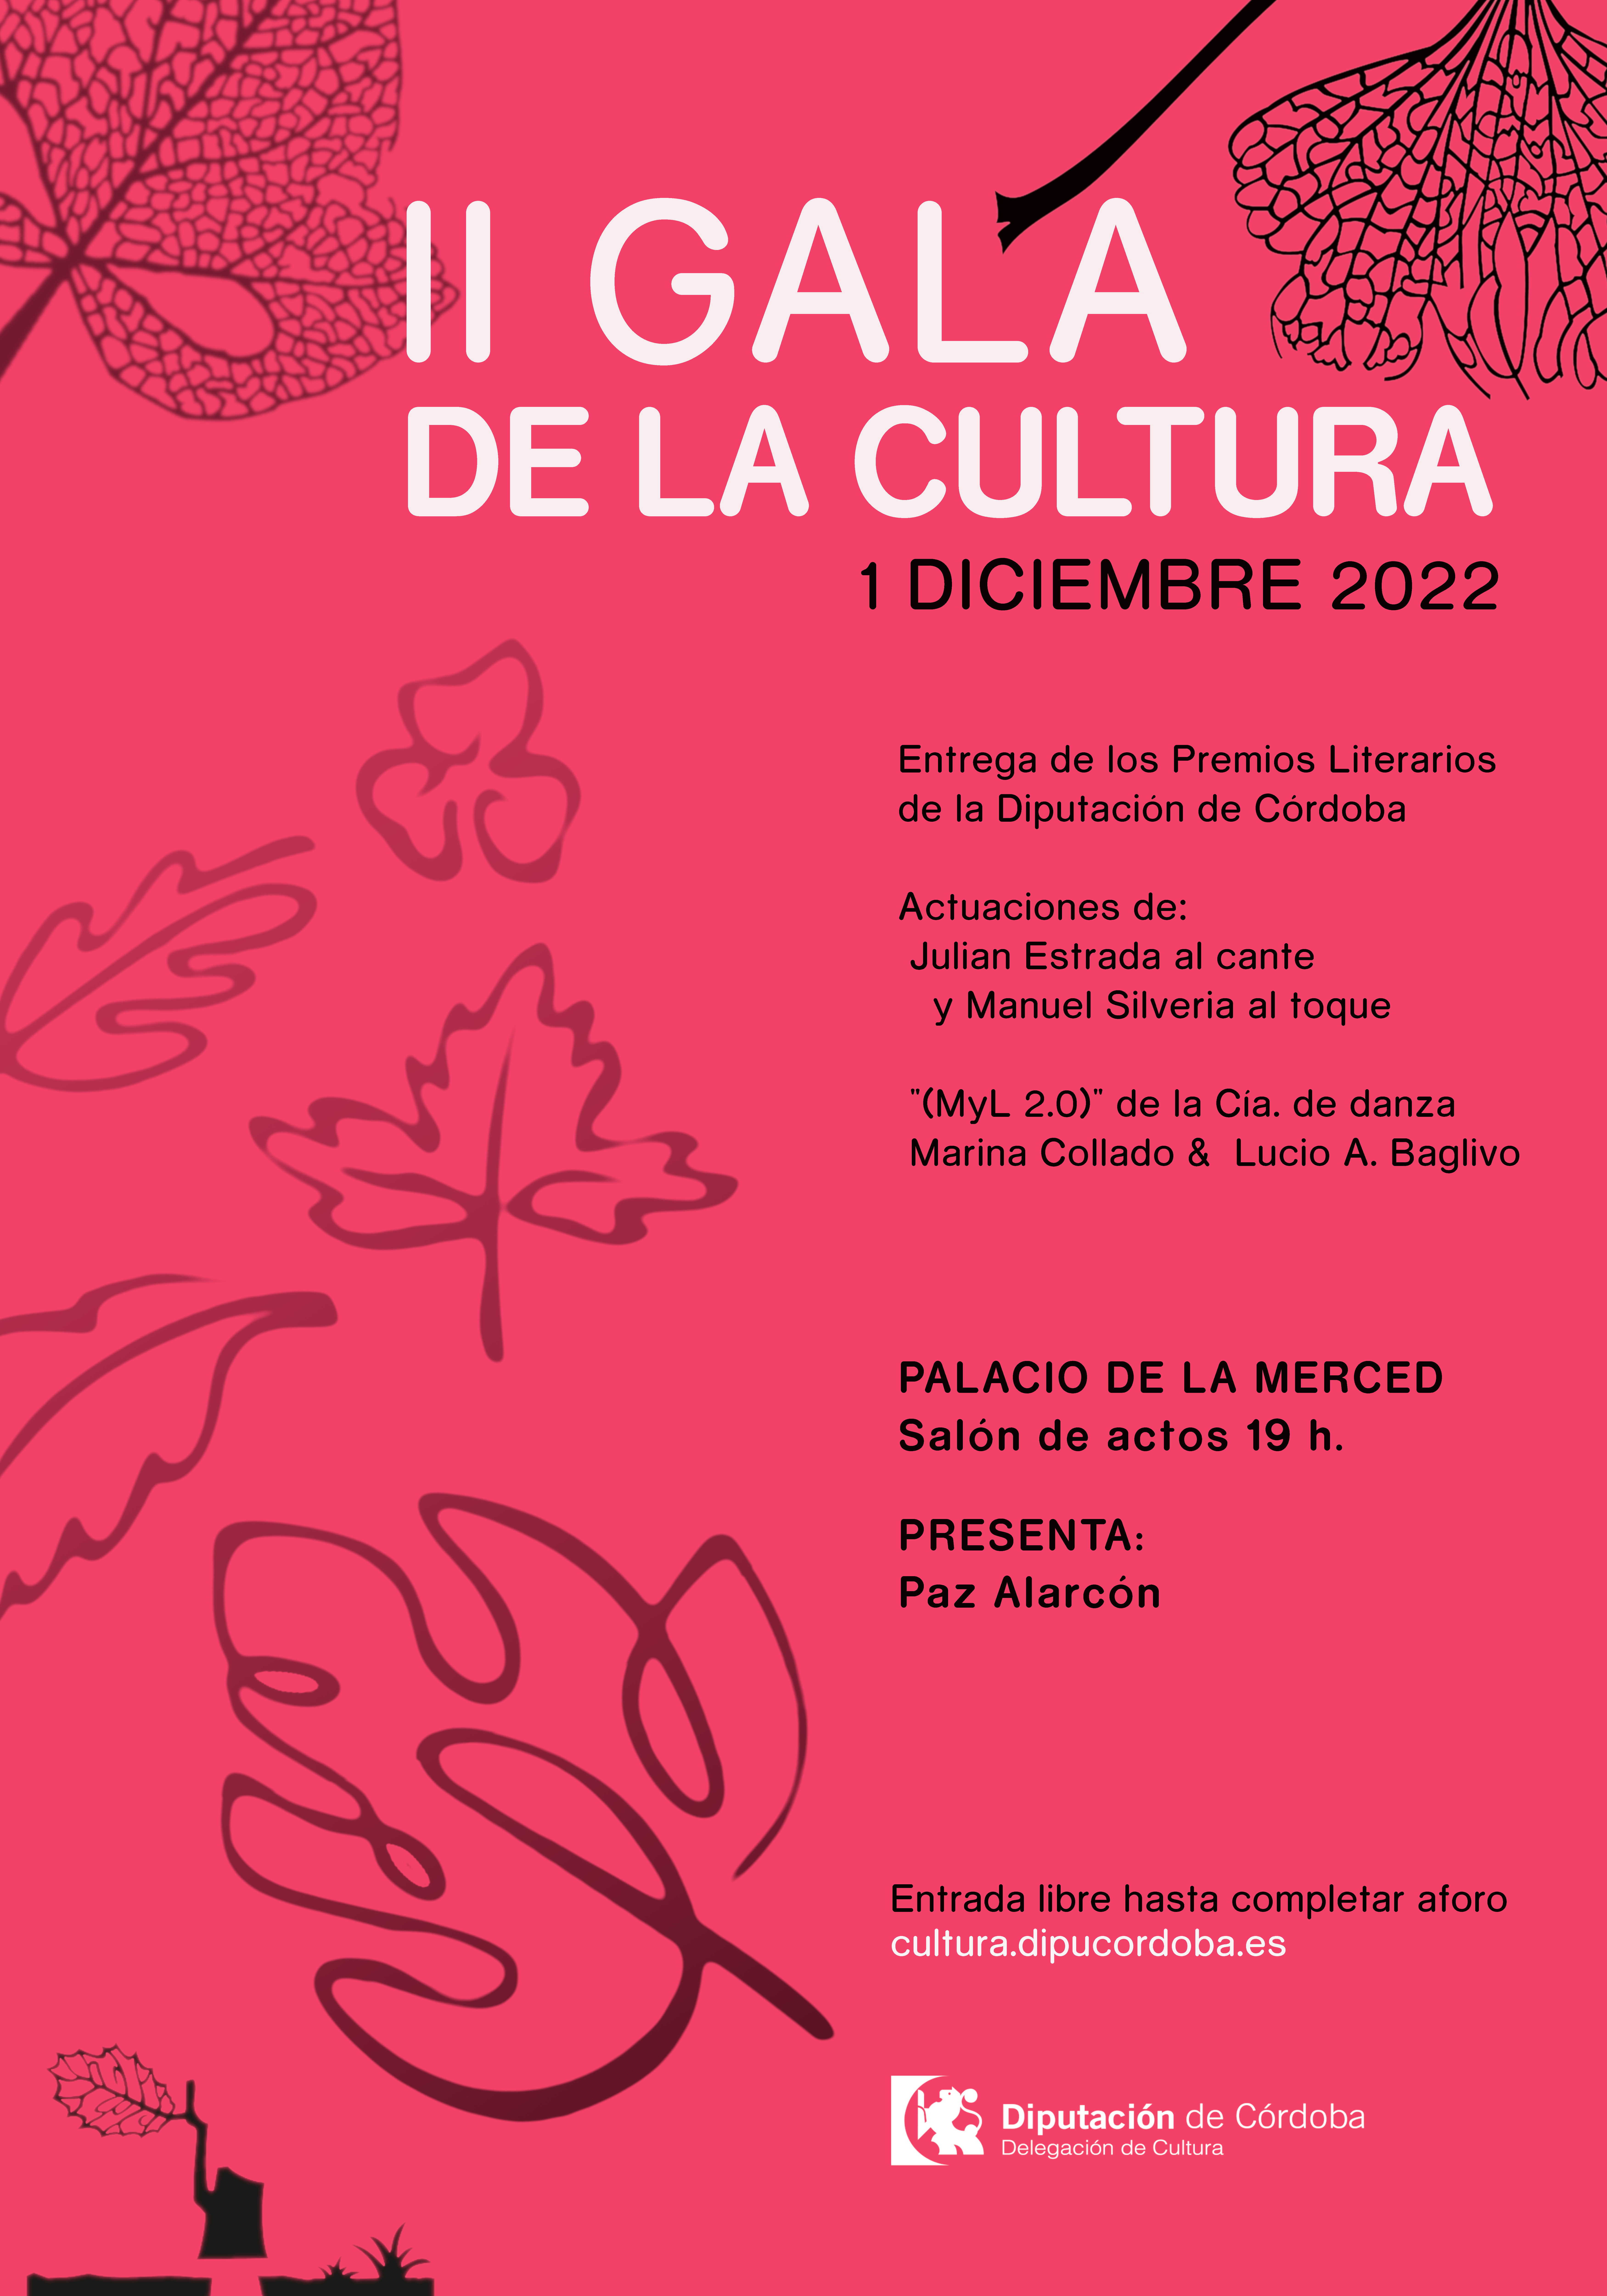 La Diputación de Córdoba celebra la II Gala de la Cultura